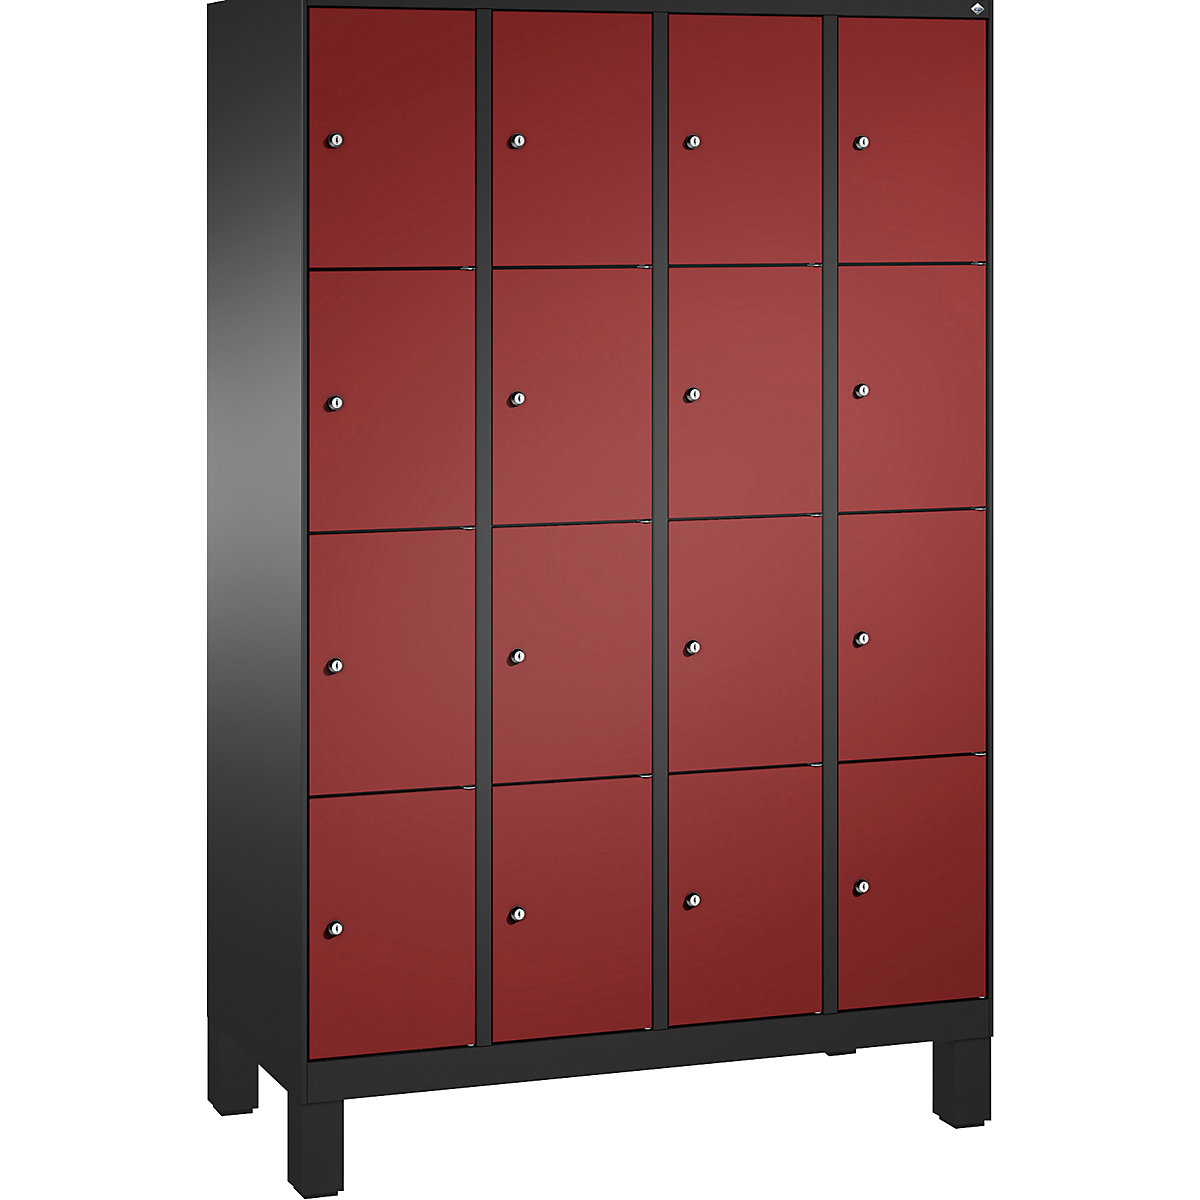 Armoire à casiers sur pieds EVOLO – C+P, 4 compartiments, 4 casiers chacun, largeur compartiments 300 mm, gris noir / rouge rubis-8